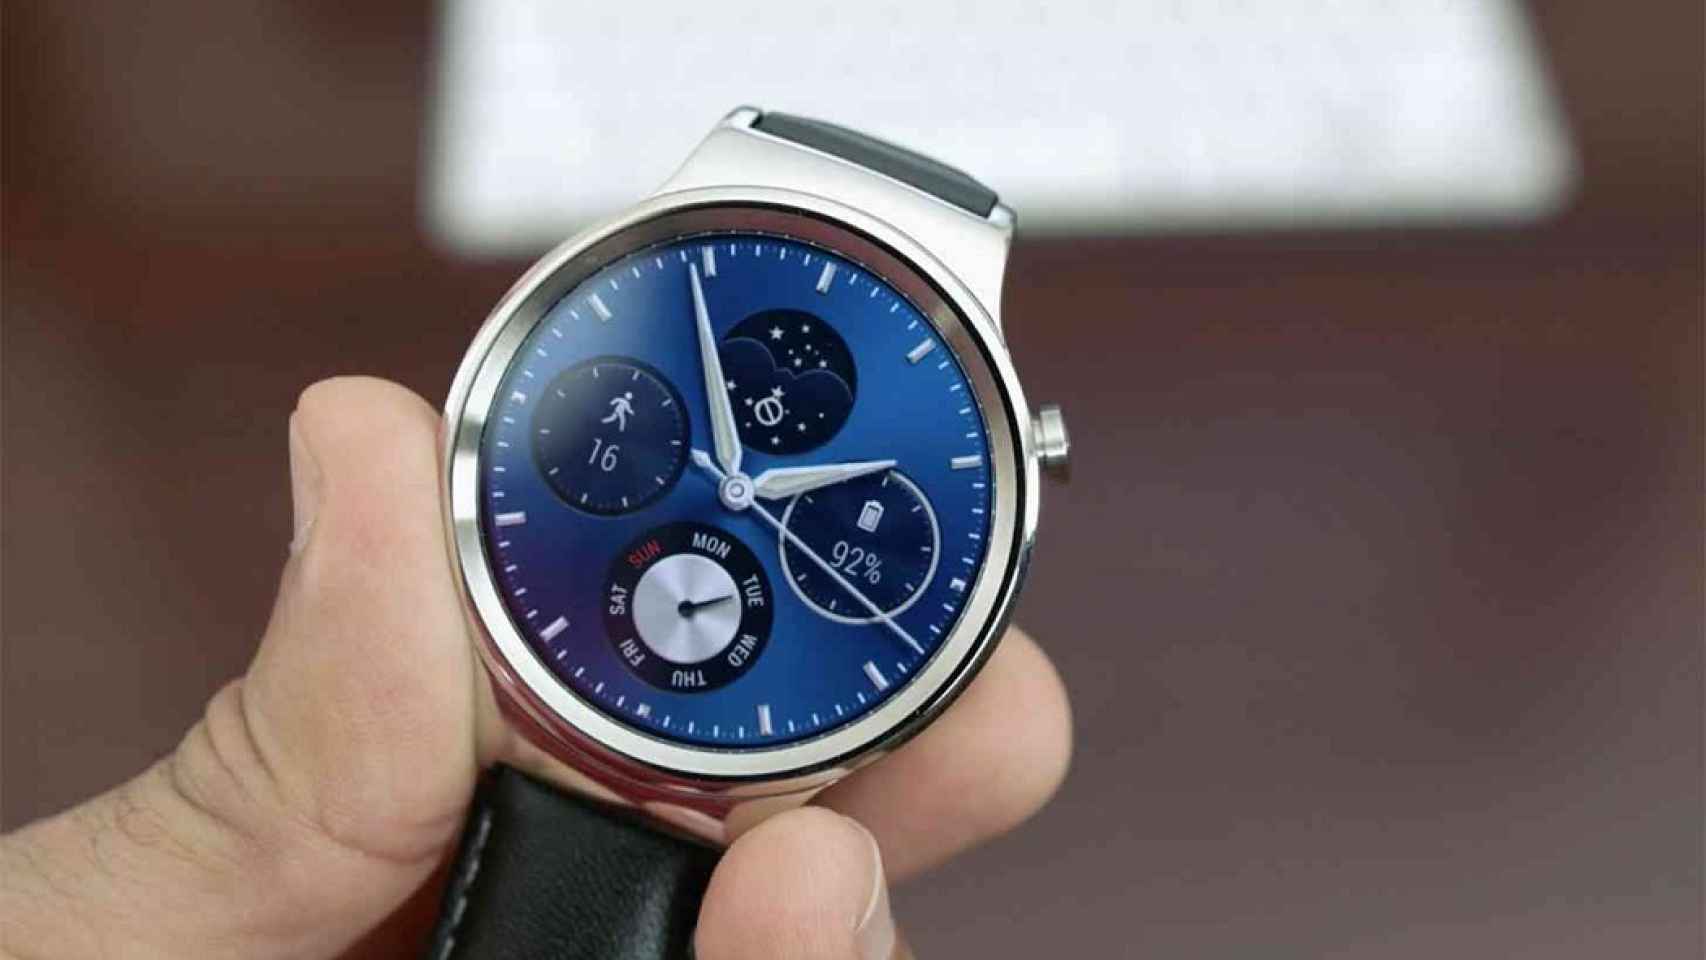 Controla el reloj dibujando en la mano, el Huawei Watch 3 lo hará posible